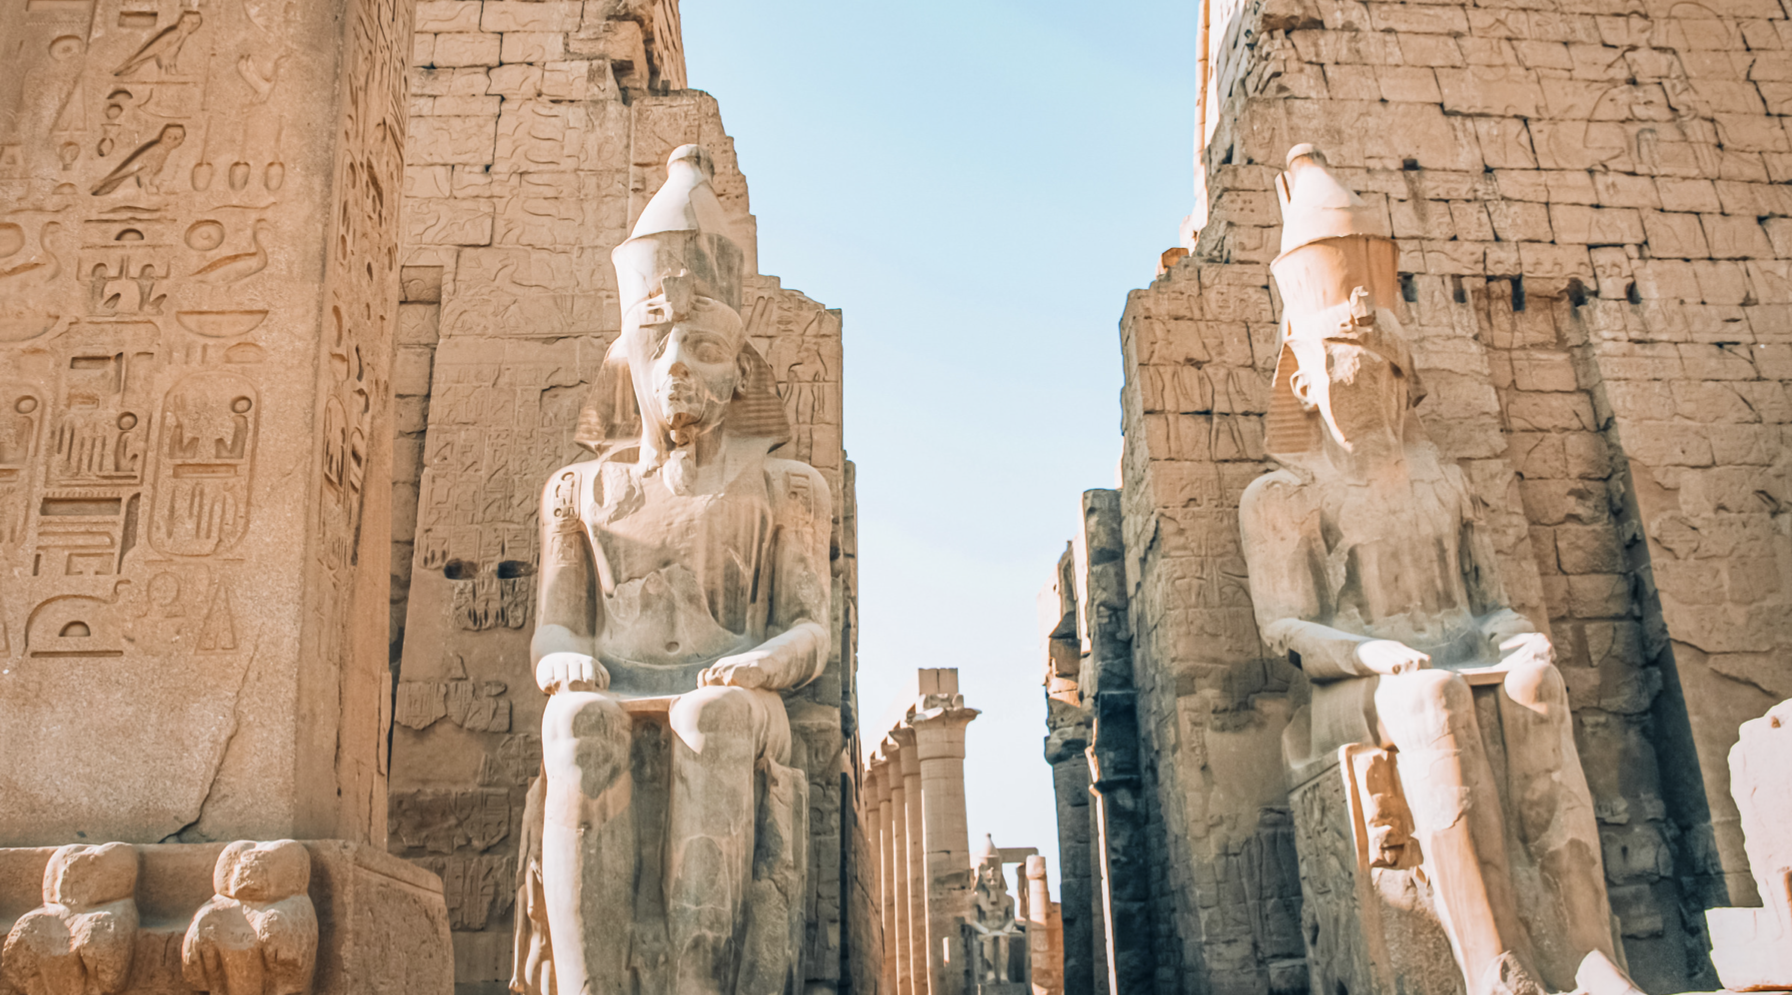 Luksor'daki en büyük Açık Hava Müzesi olan Mısır Karnak Tapınağı'nın kalıntıları